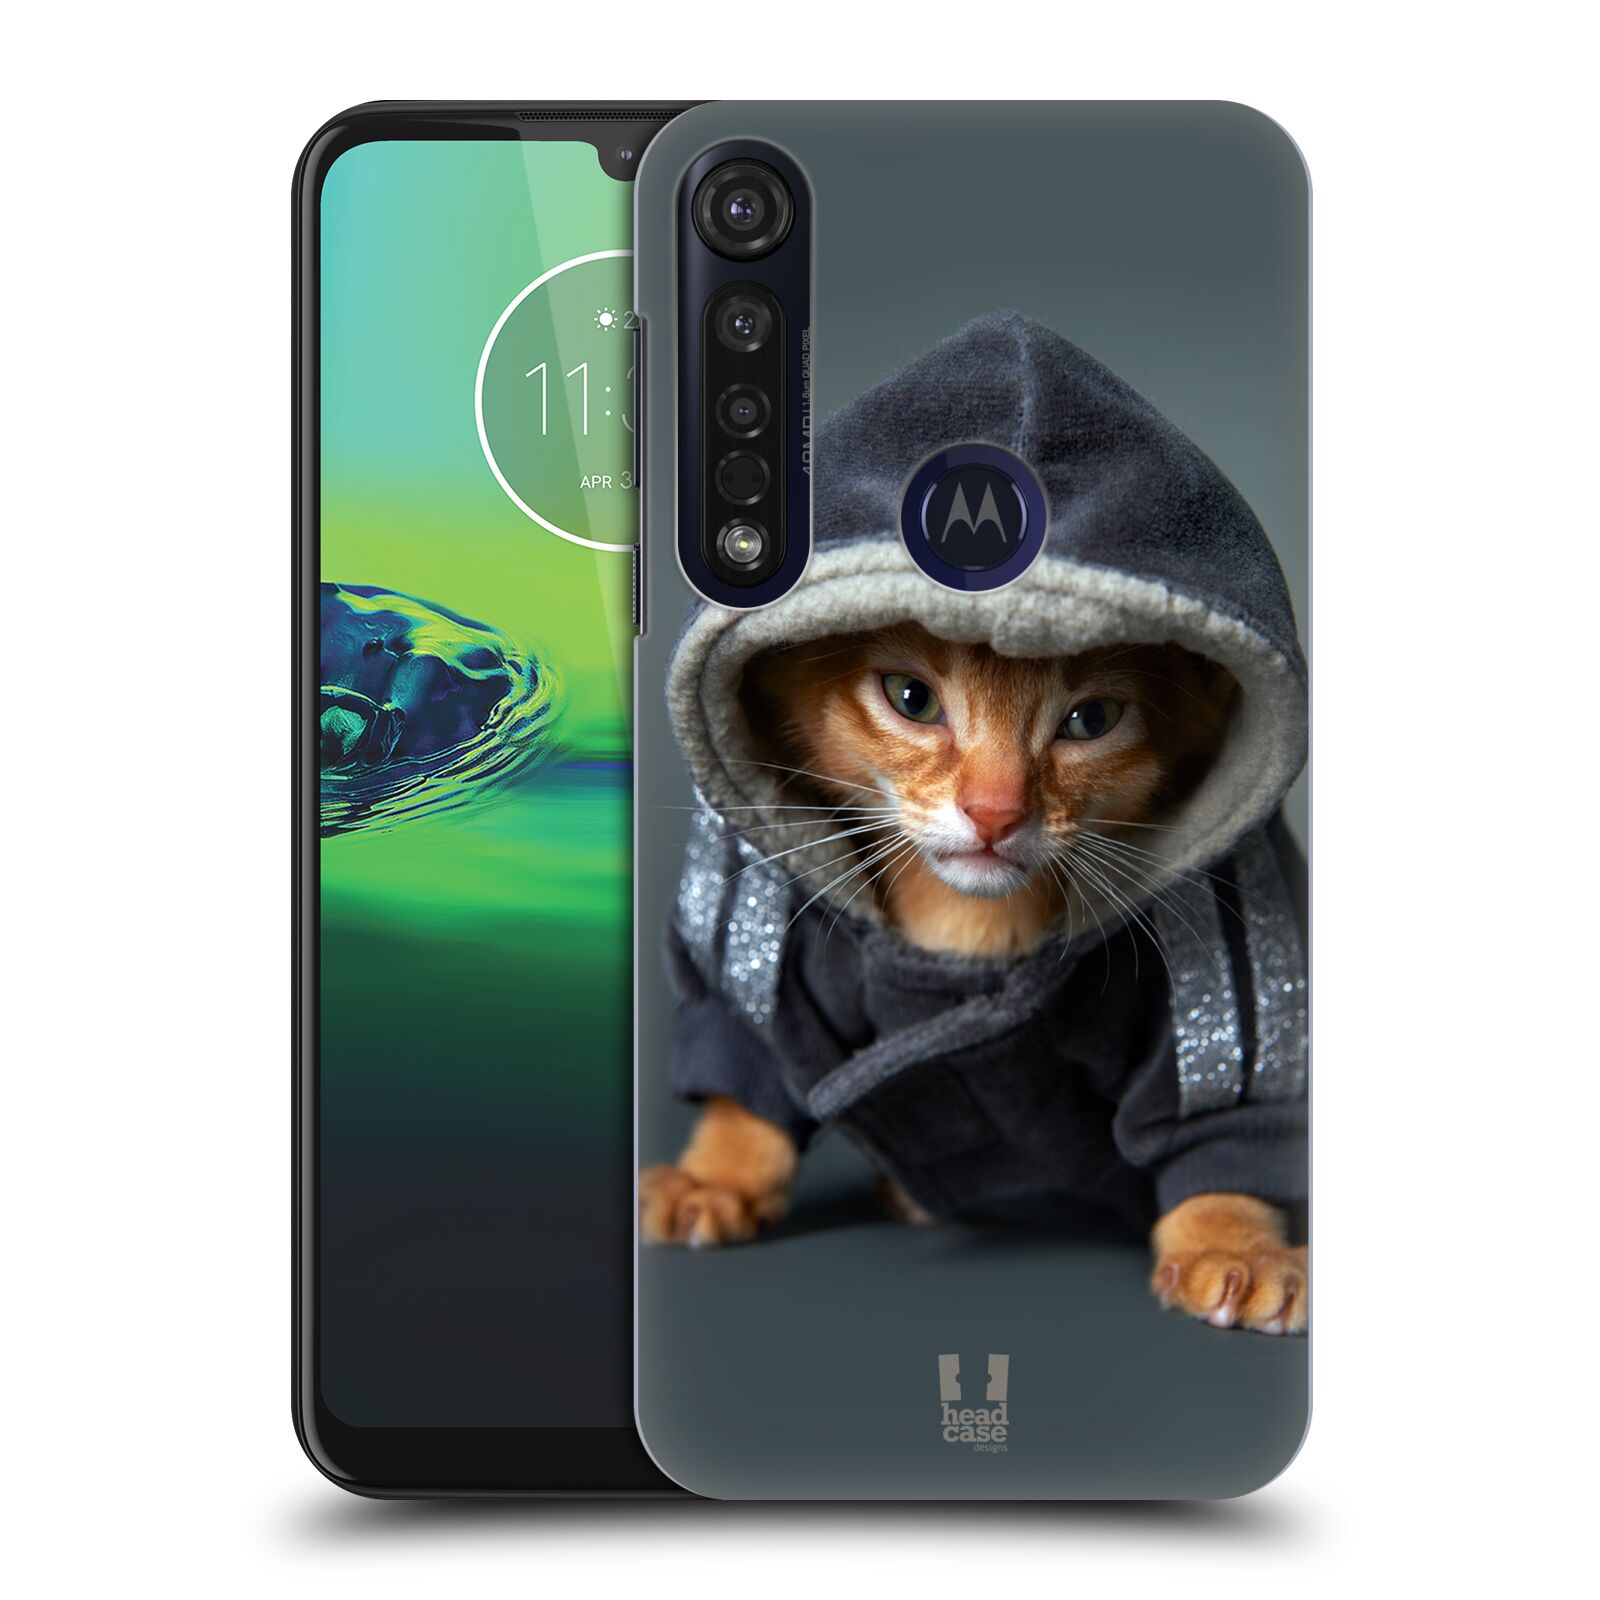 Pouzdro na mobil Motorola Moto G8 PLUS - HEAD CASE - vzor Legrační zvířátka kotě/kočička s kapucí